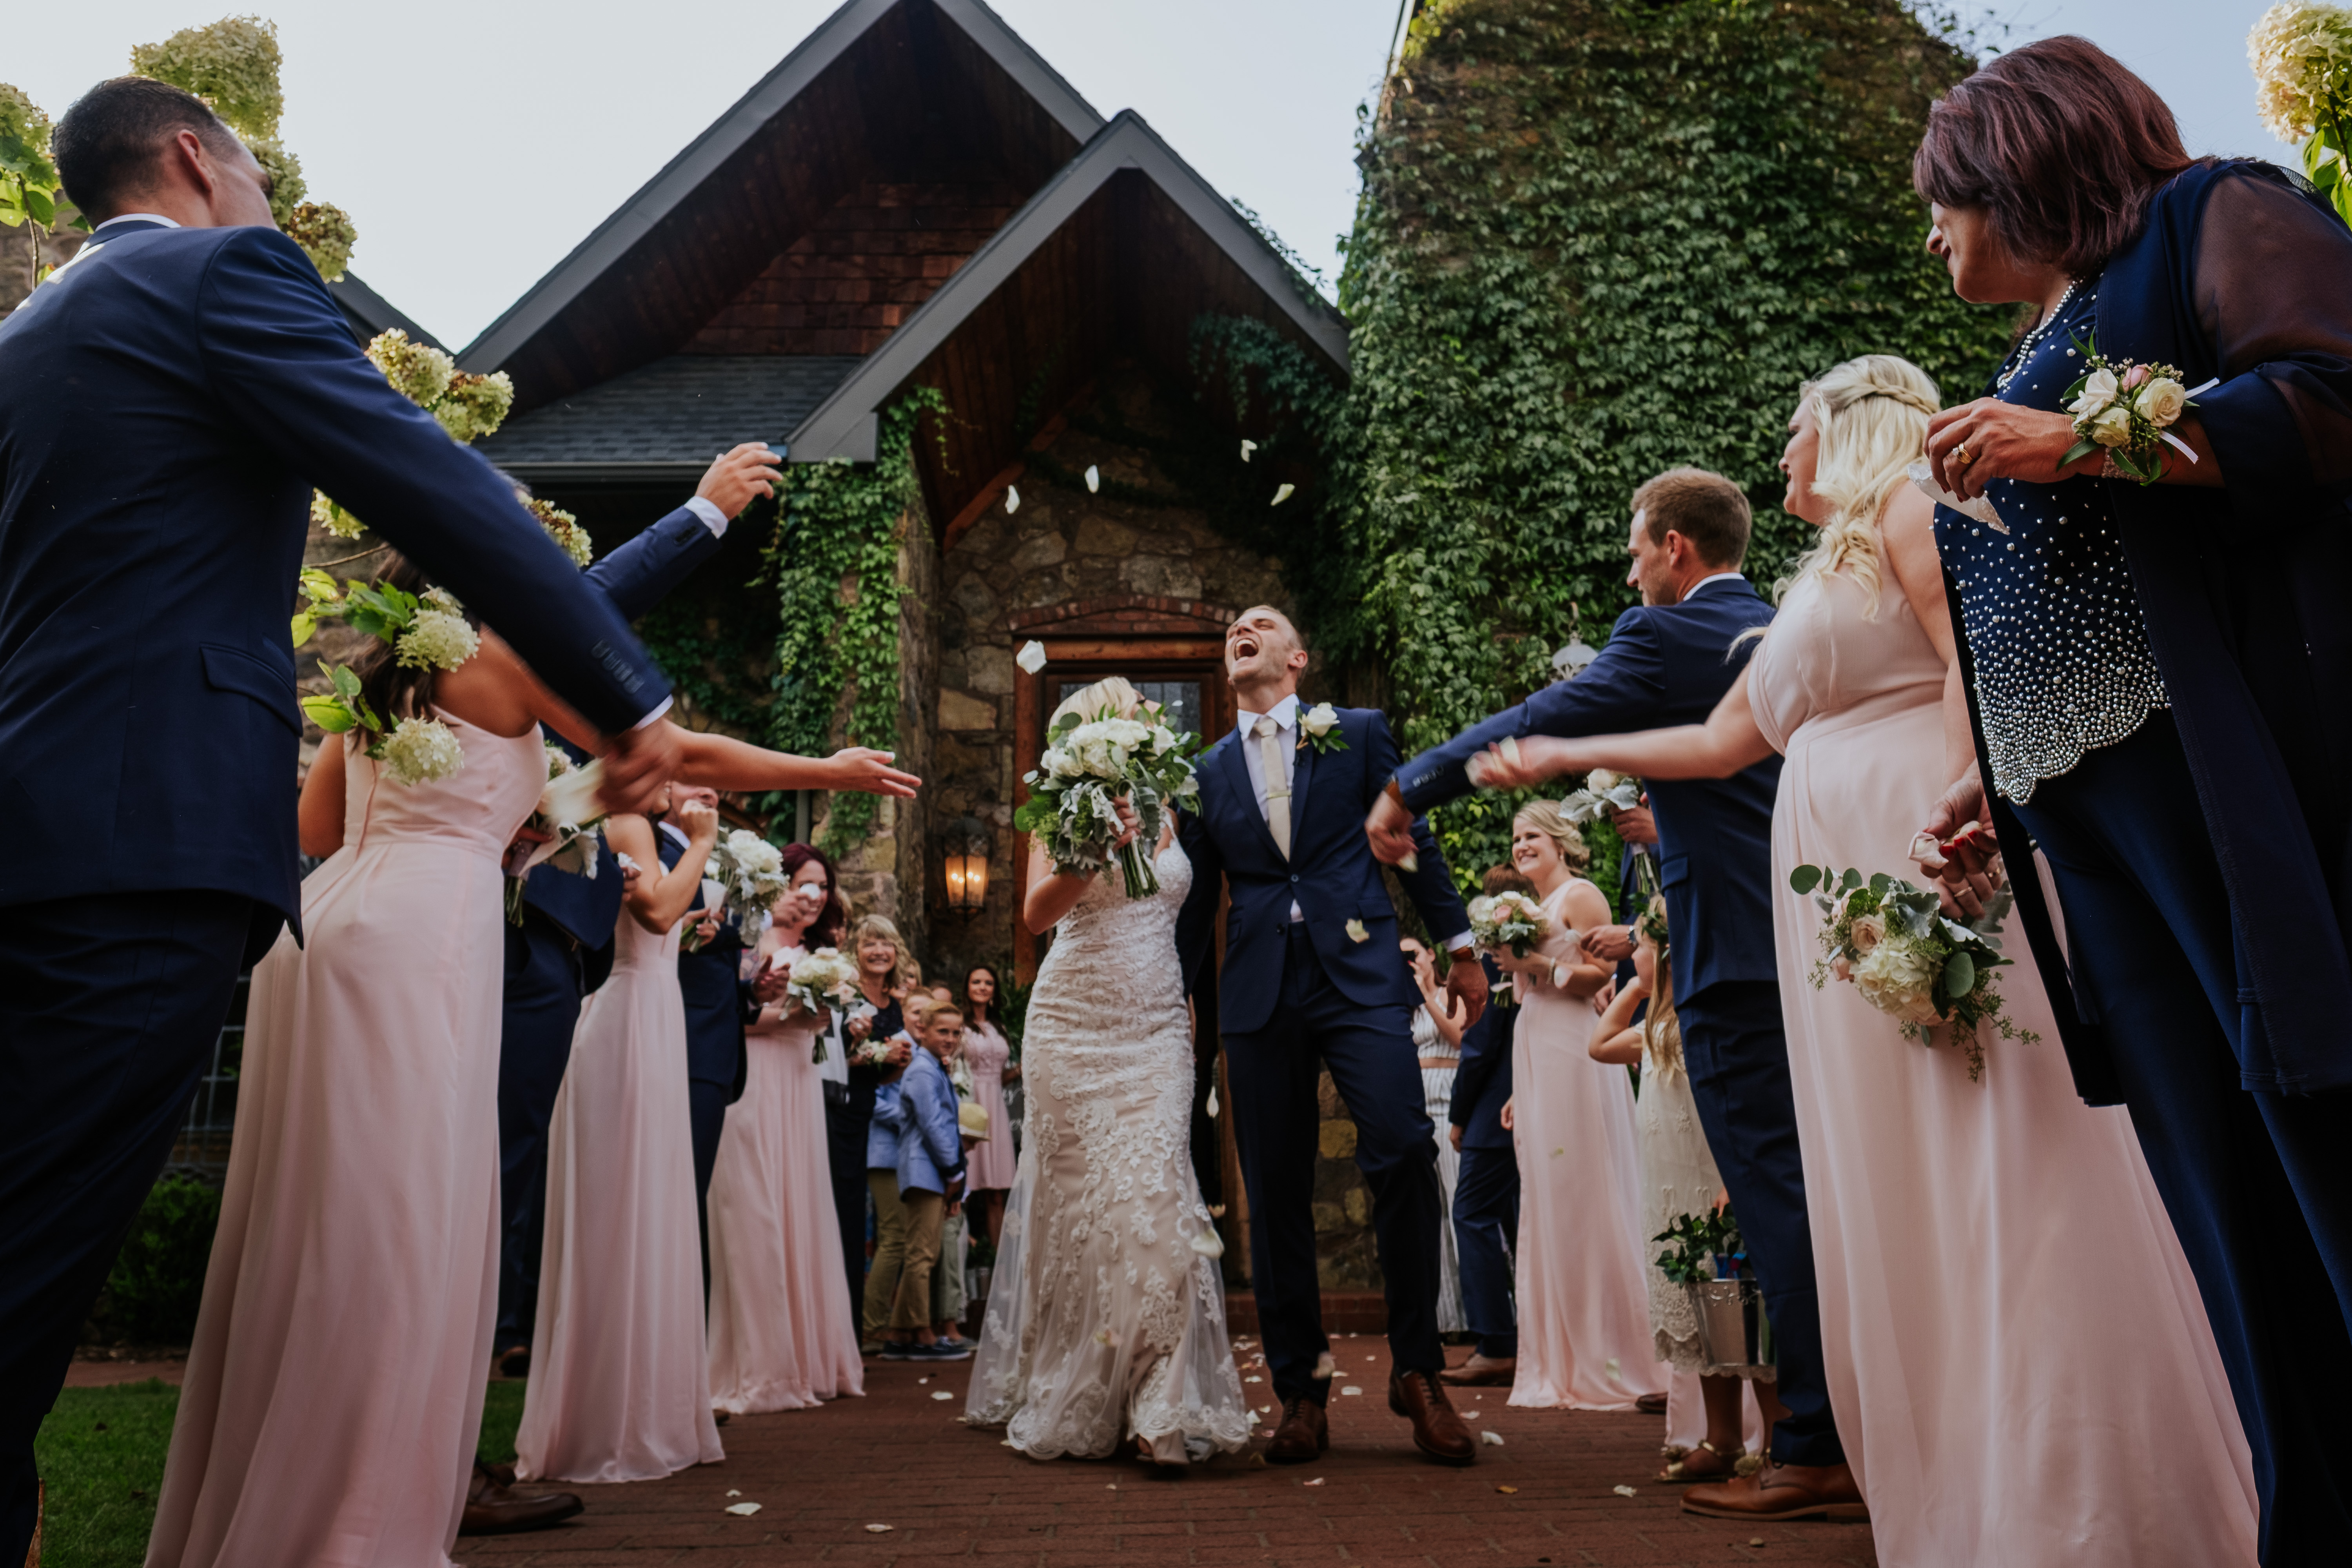 Wedding-planning-tips-tricks-timeline-guide-ceremony-exit-vinson-images